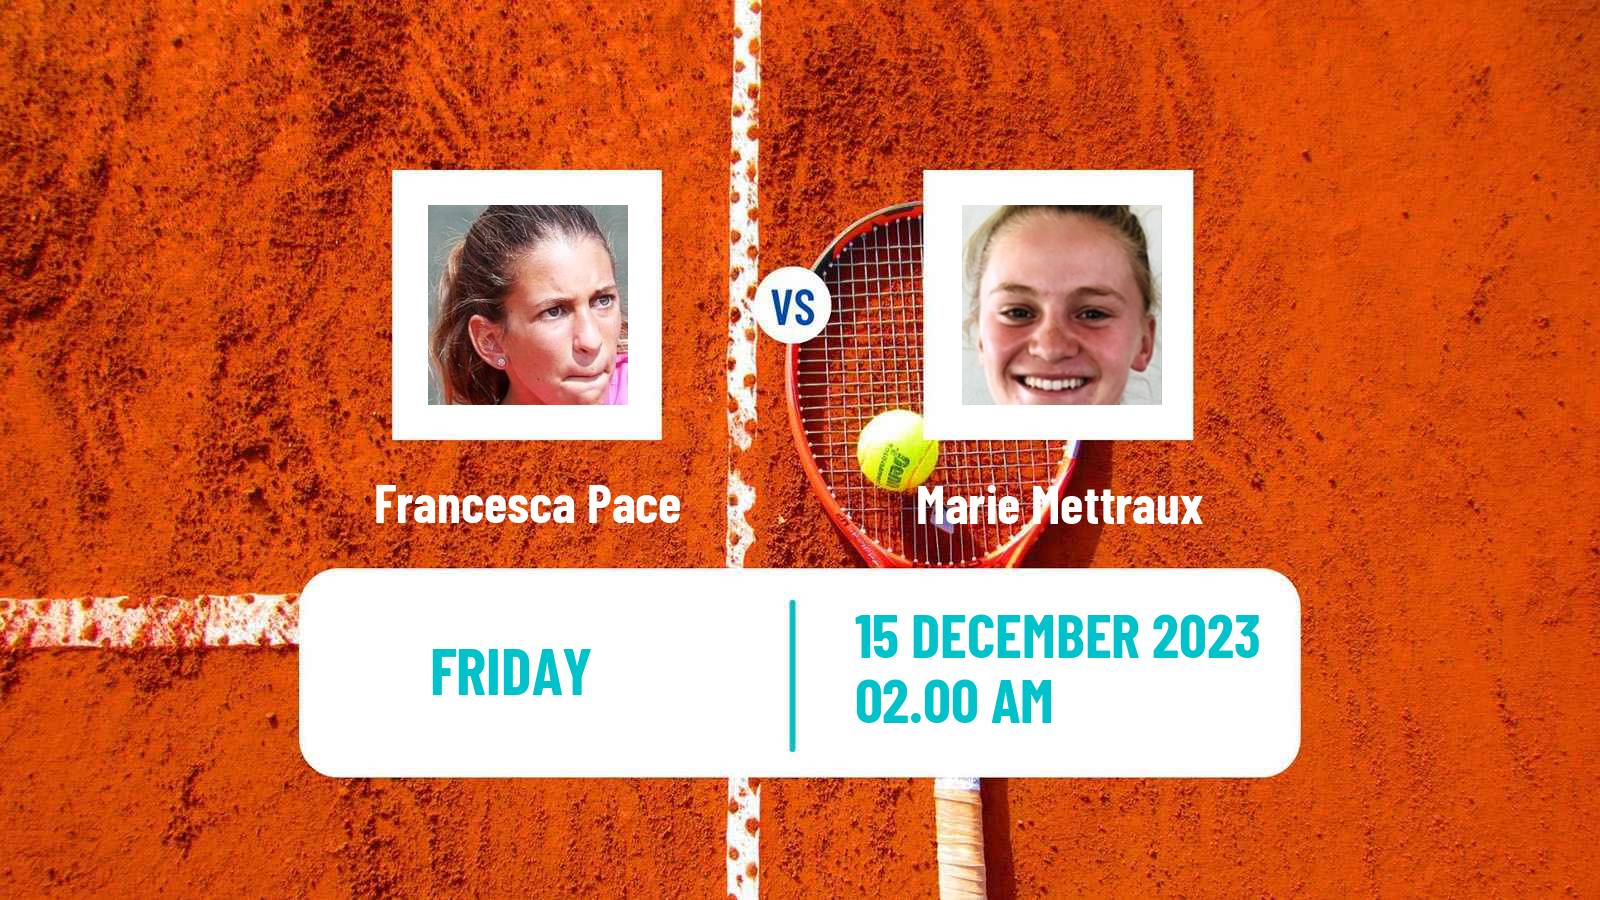 Tennis ITF W15 Antalya 22 Women Francesca Pace - Marie Mettraux